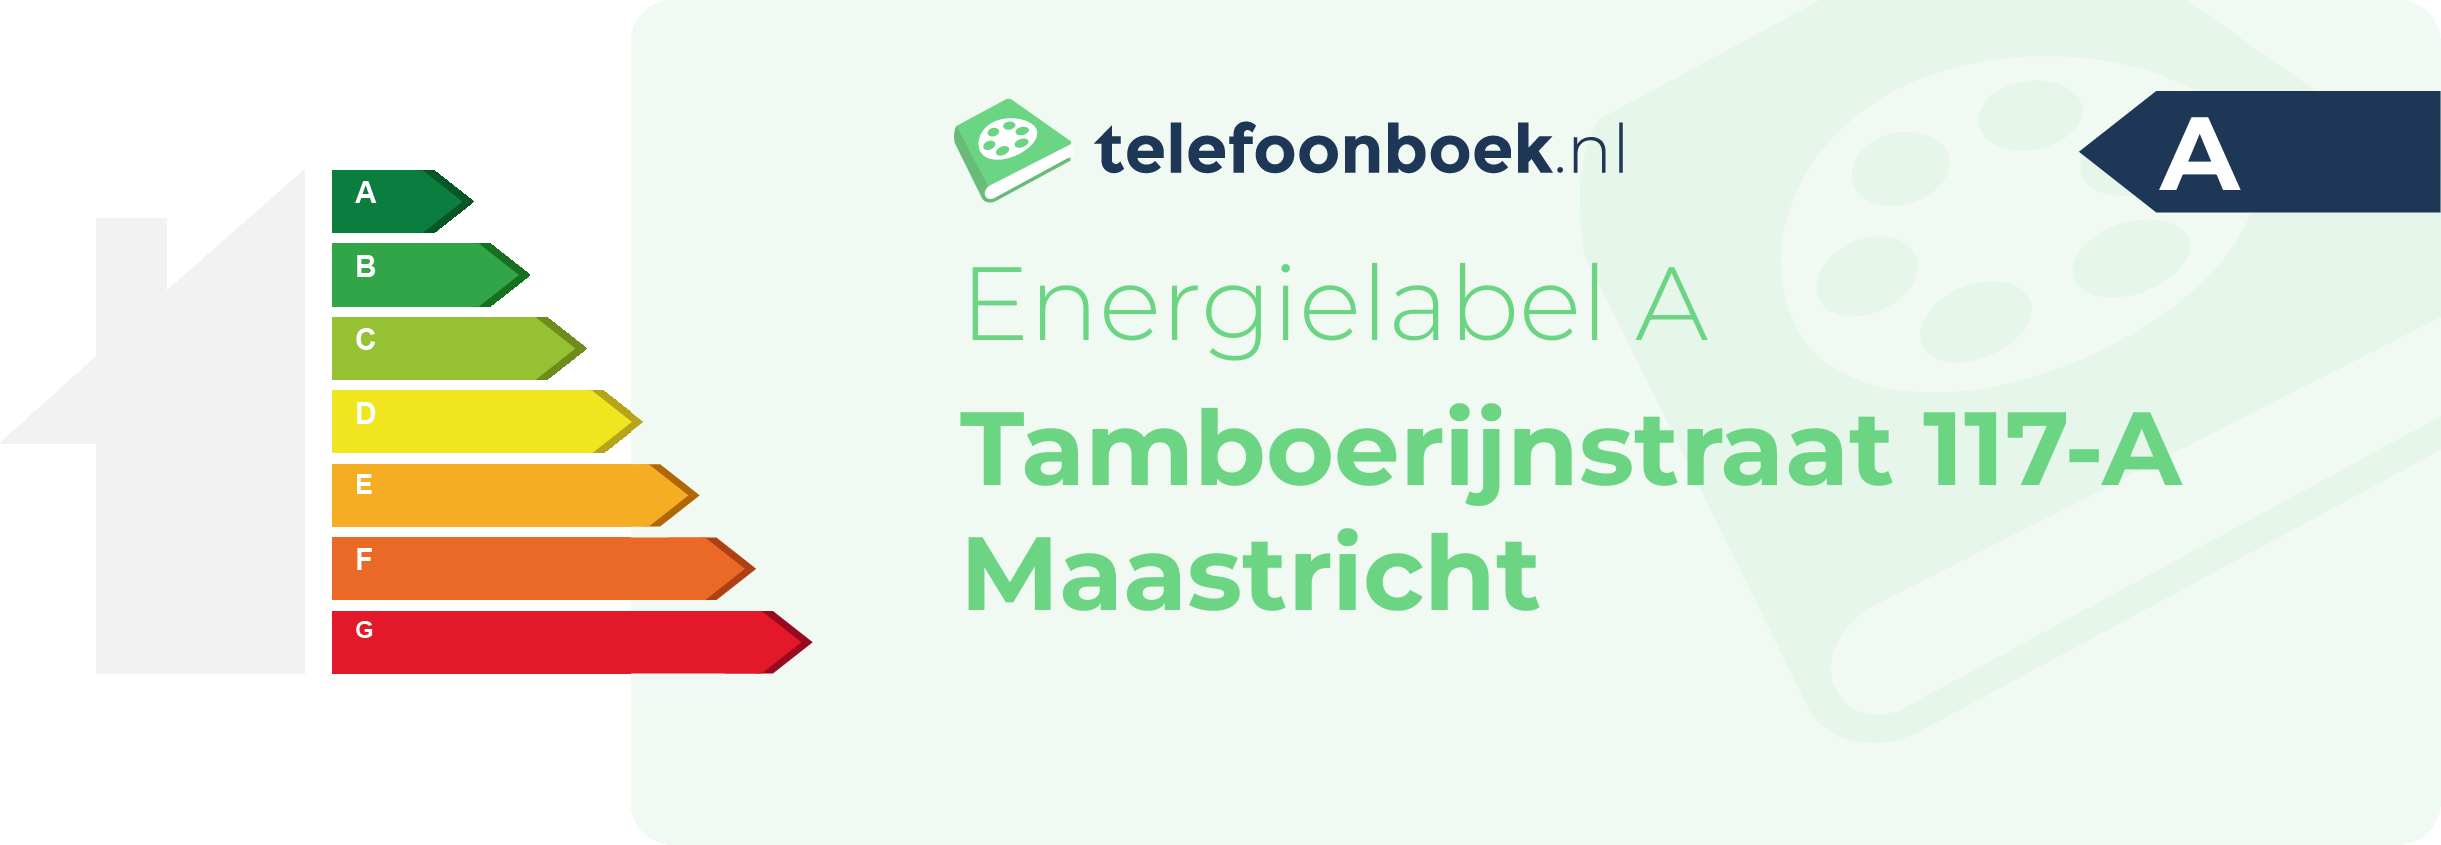 Energielabel Tamboerijnstraat 117-A Maastricht